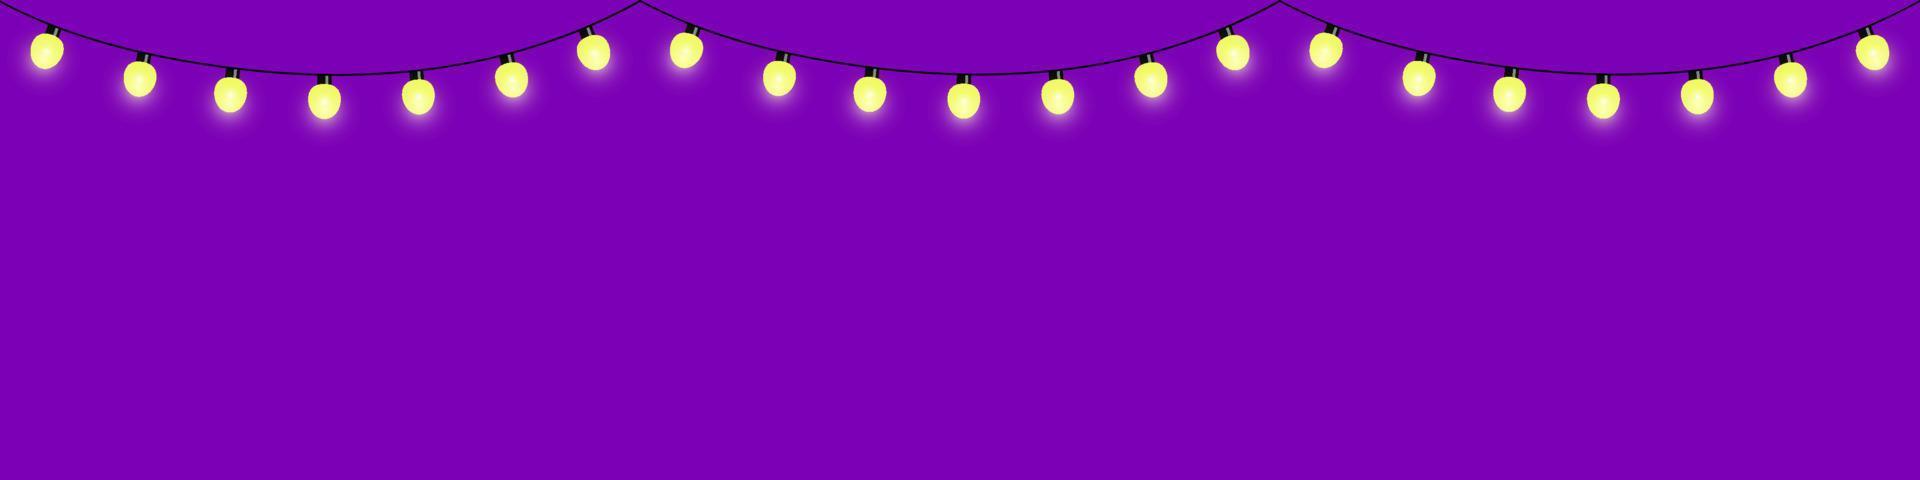 Oost Timor langs regelmatig decoratieve slinger van elektrische gloeilampen, twinkelende lichtjes, gele  lampen. paarse achtergrond. vectorontwerp. 8076301 Vectorkunst bij Vecteezy